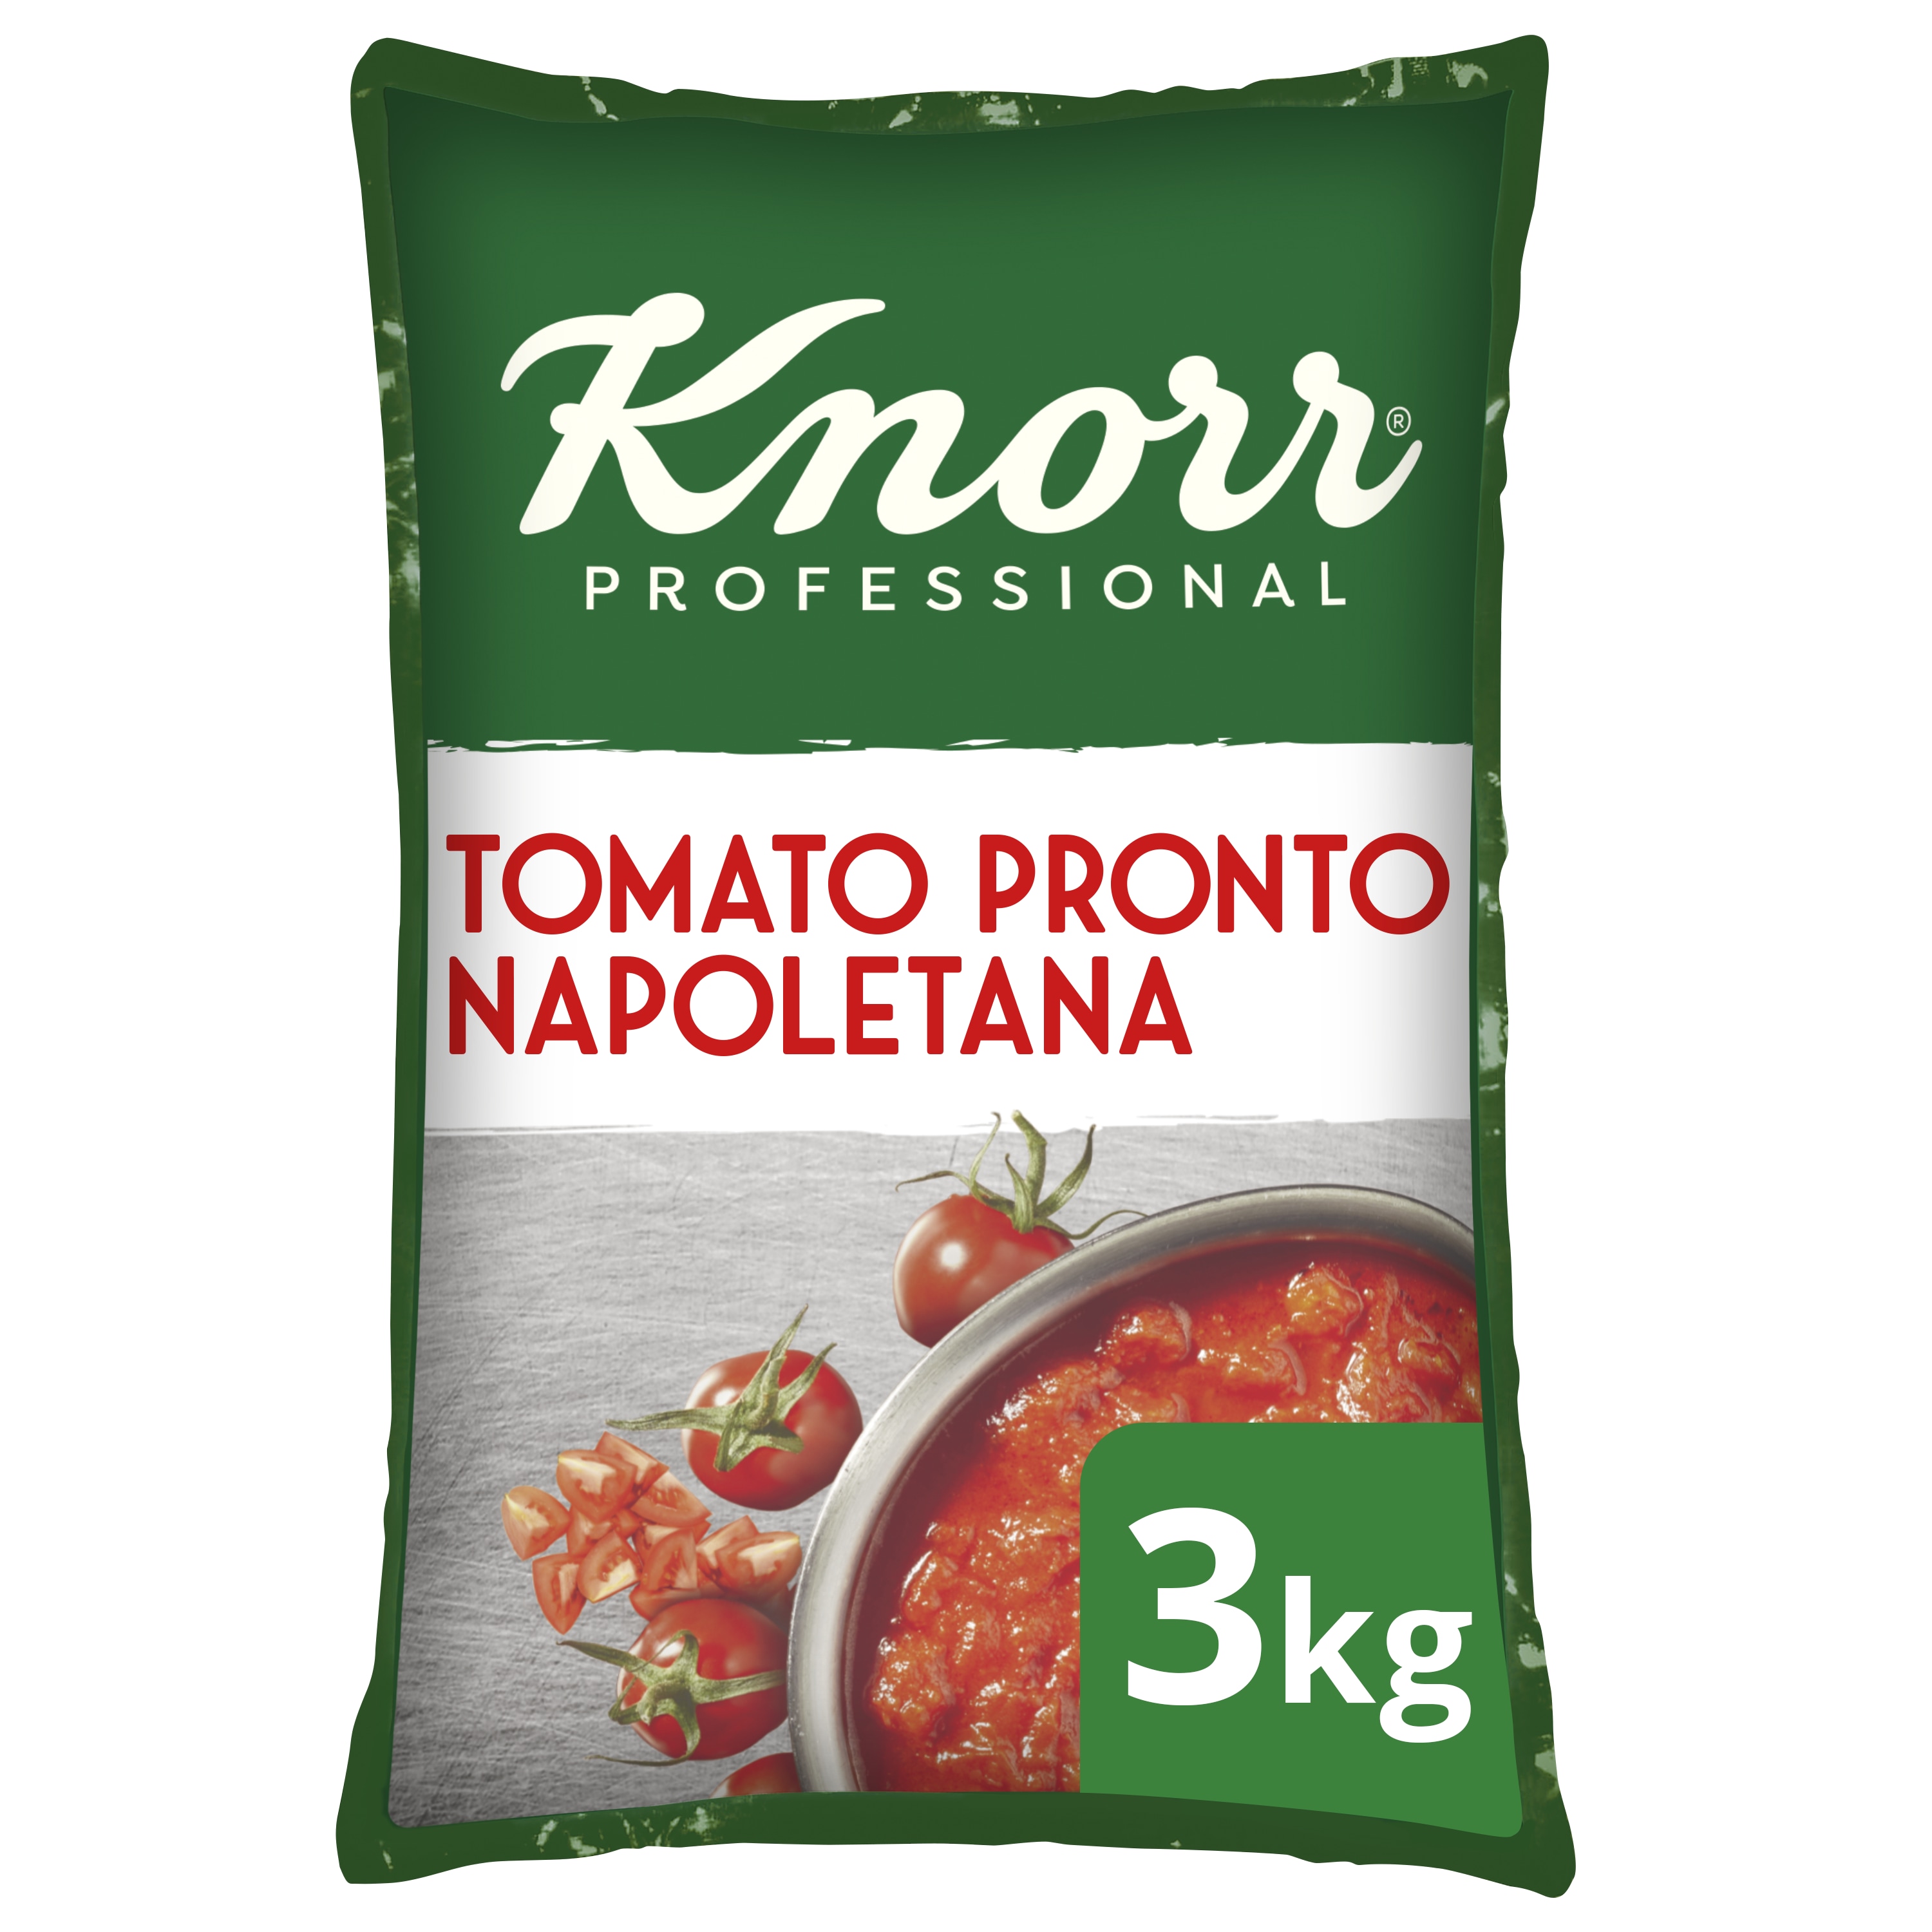 Knorr Professional Italiana Tomato Pronto Napoletana Saus 3kg - 